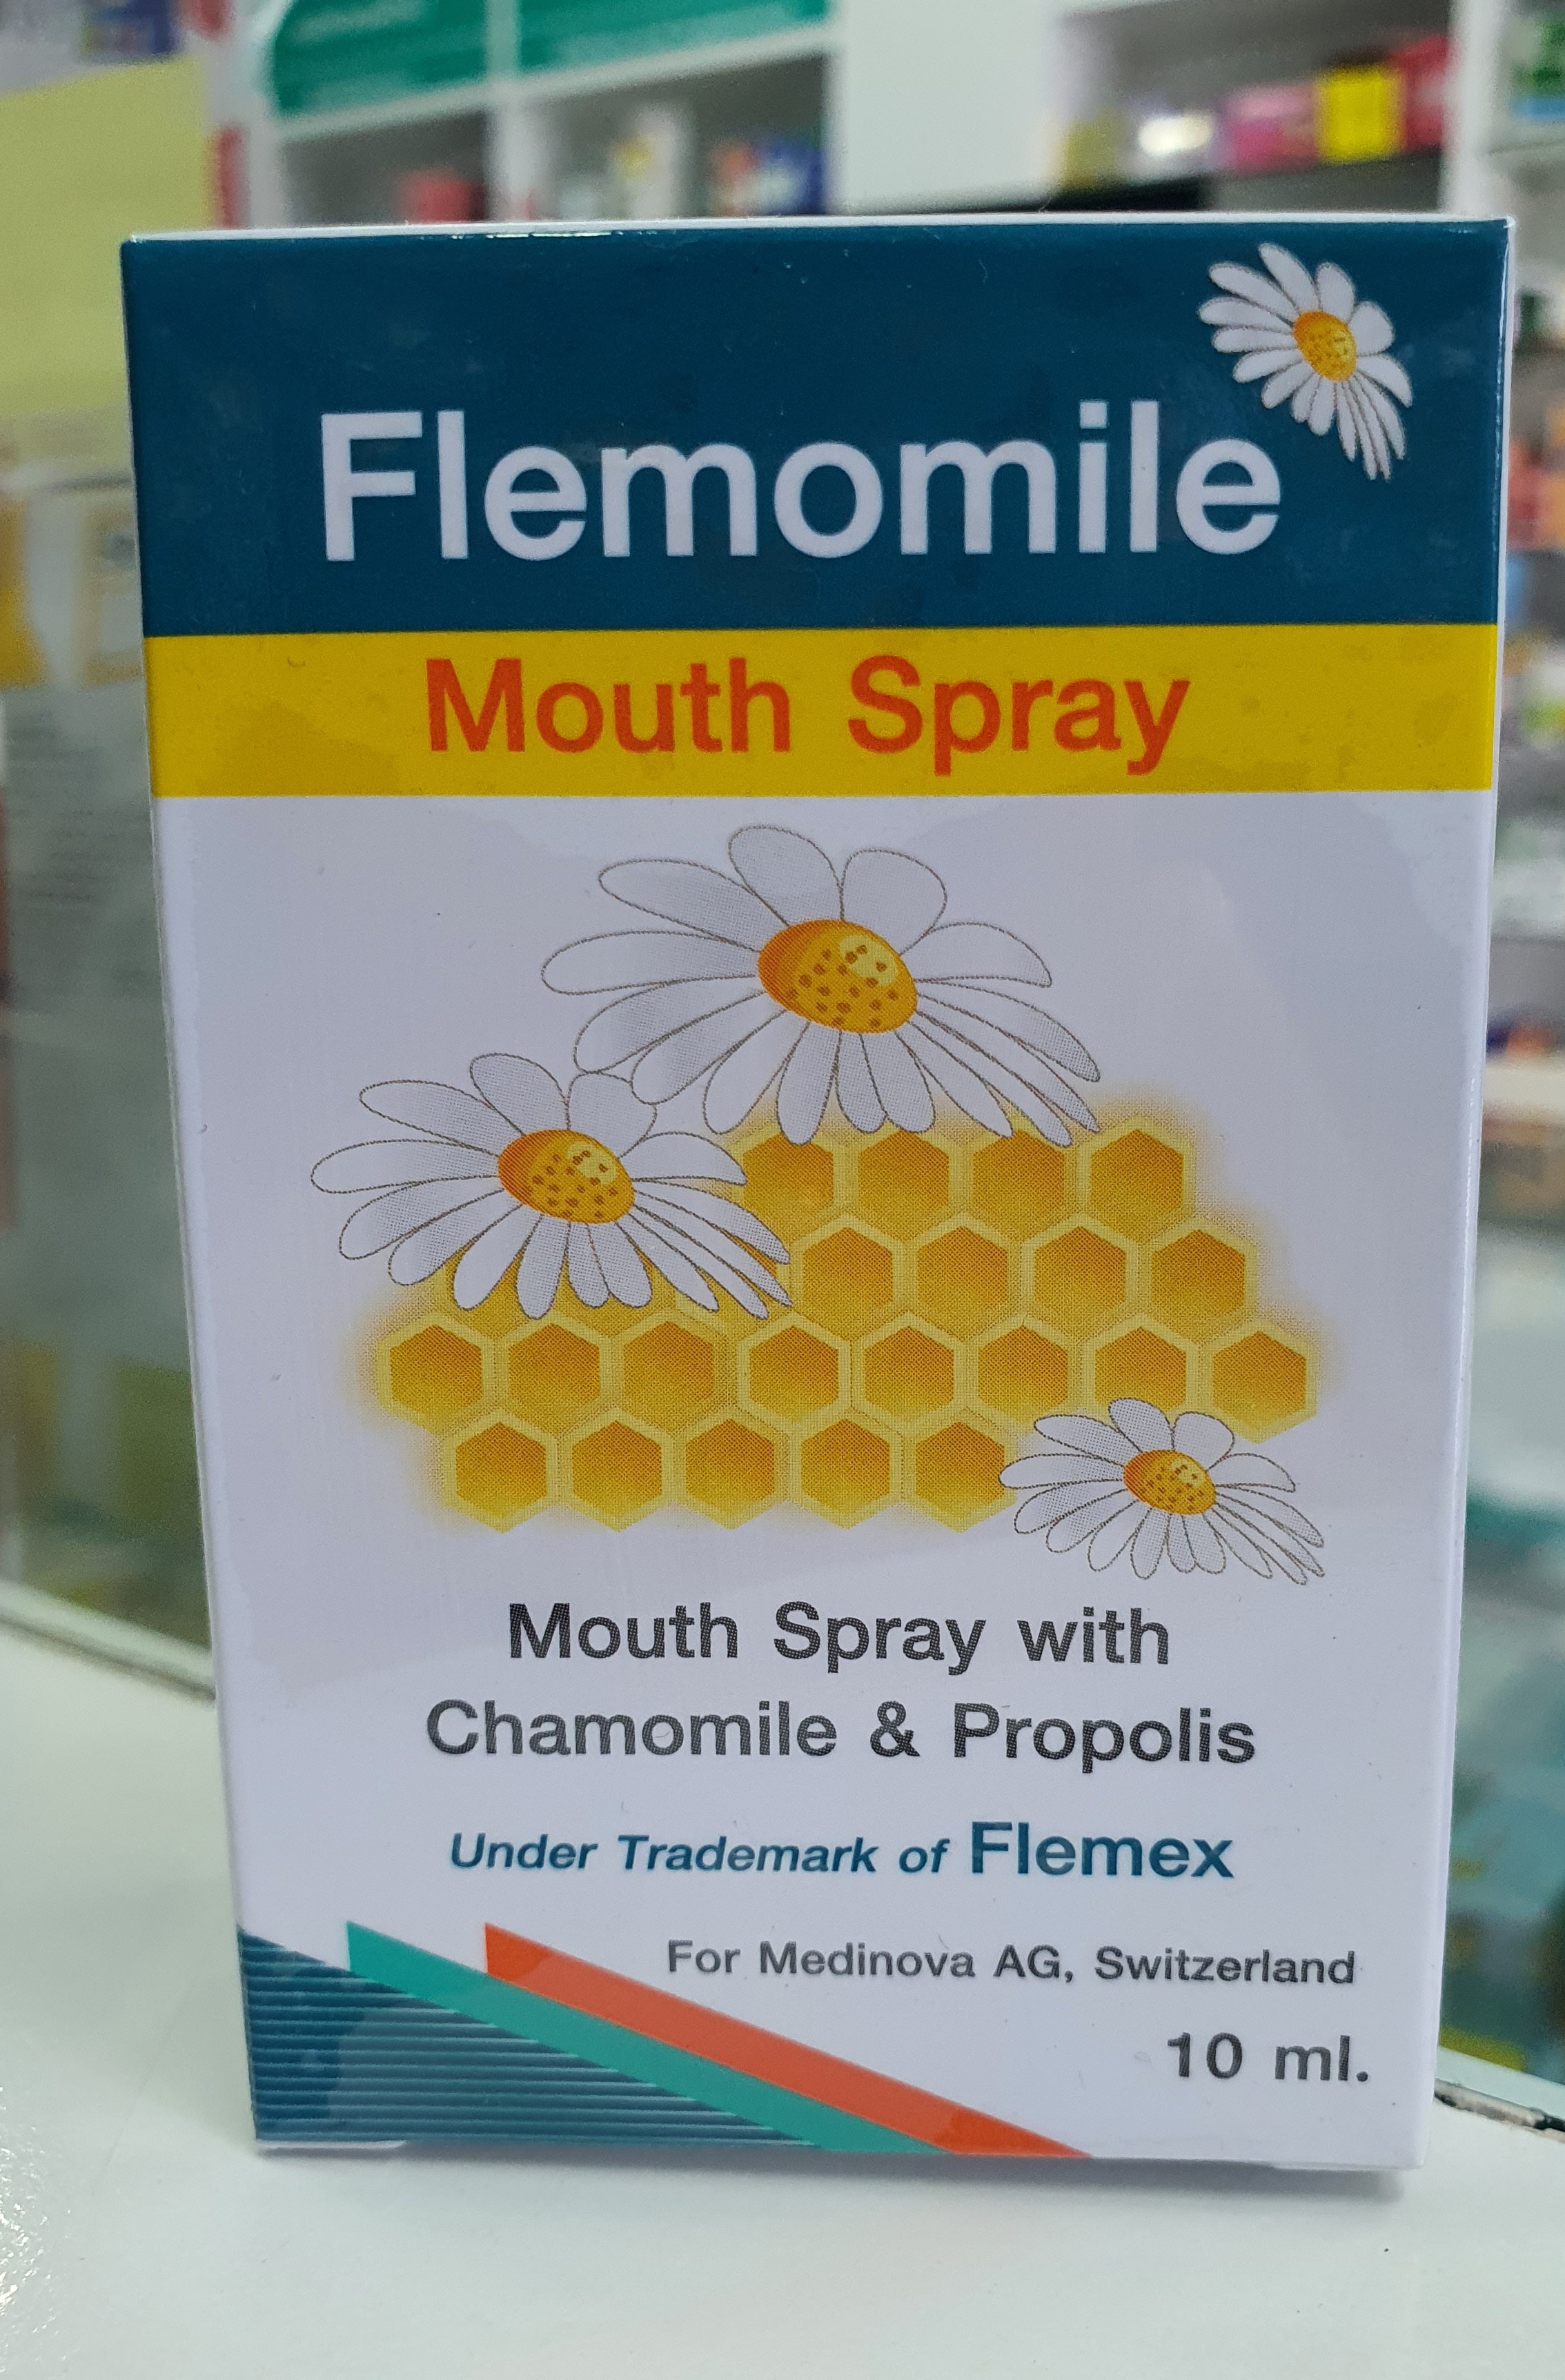 Flemomile Mouth Spray 10ml เฟลมโมมายด์ ลดการระคายเคืองในลำคอ ช่วยระงับกลิ่นปาก